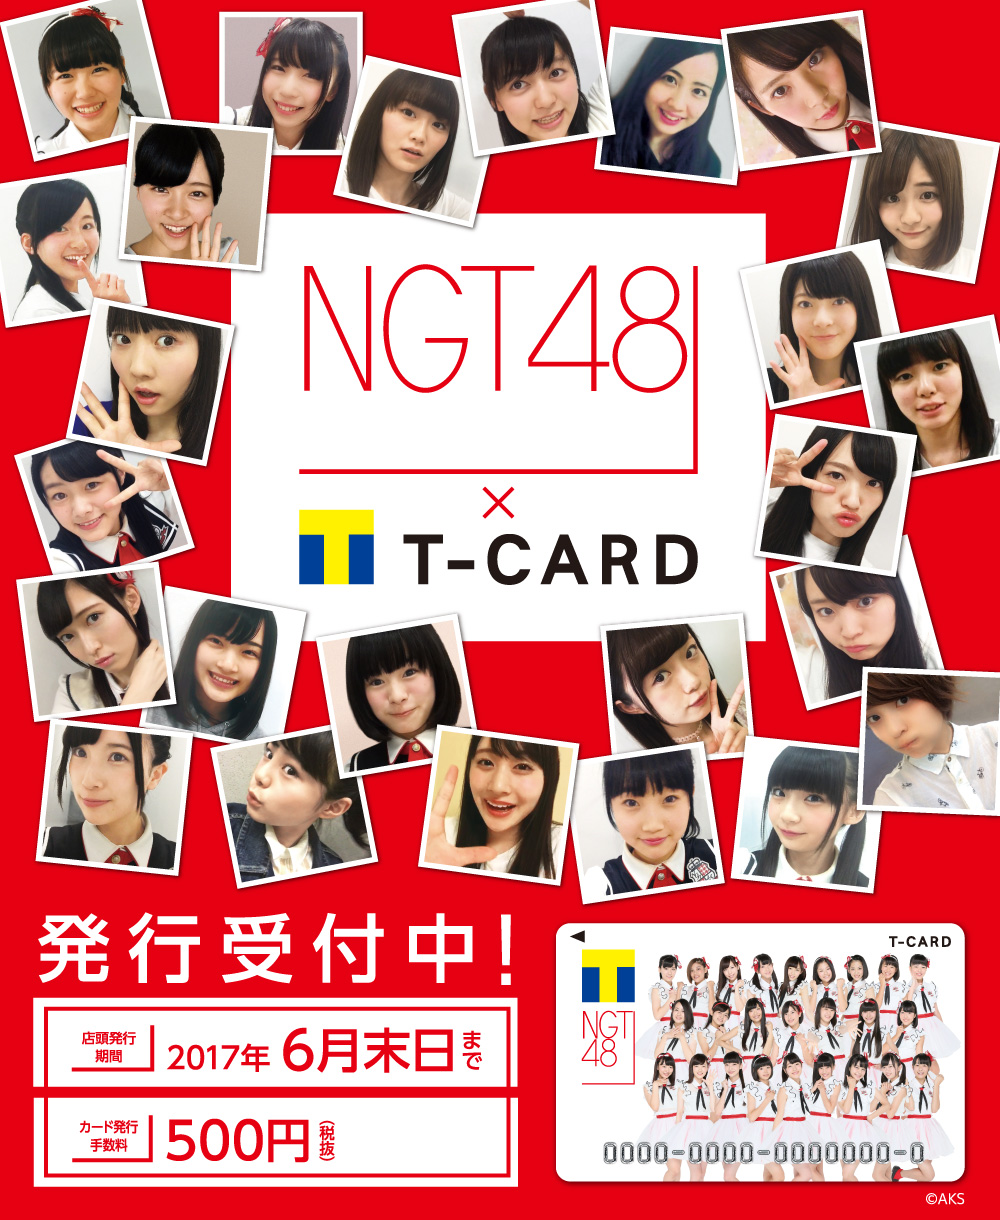 NGT48×Tカード - Tカード[Tポイント/Tカード]